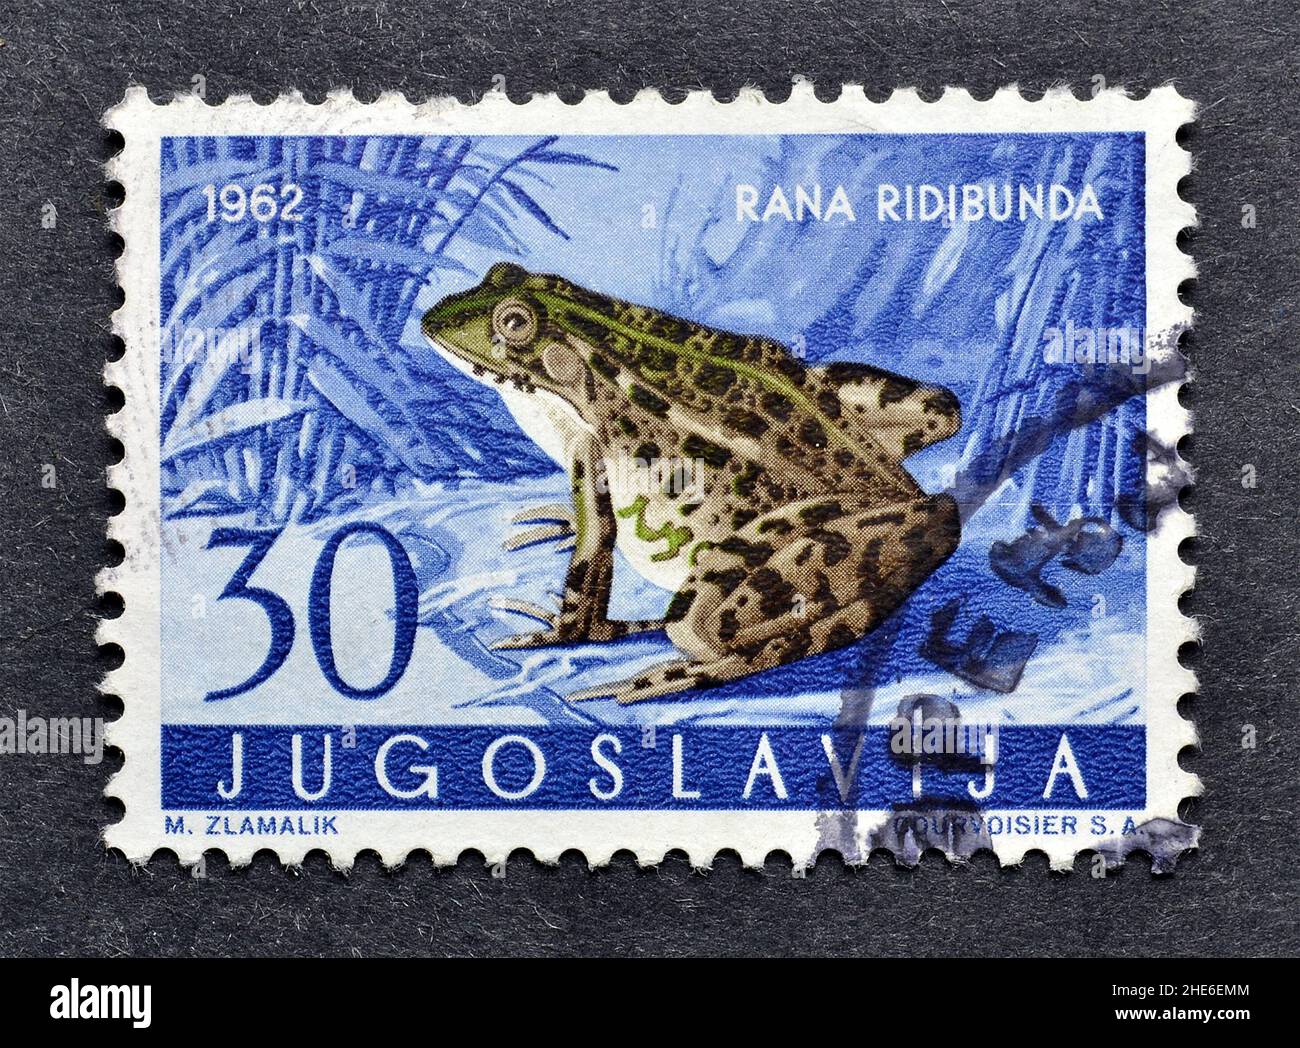 Abgesagte Briefmarke gedruckt von Jugoslawien, die Levant Water Frog (Rana ridibunda) zeigt, um 1962. Stockfoto